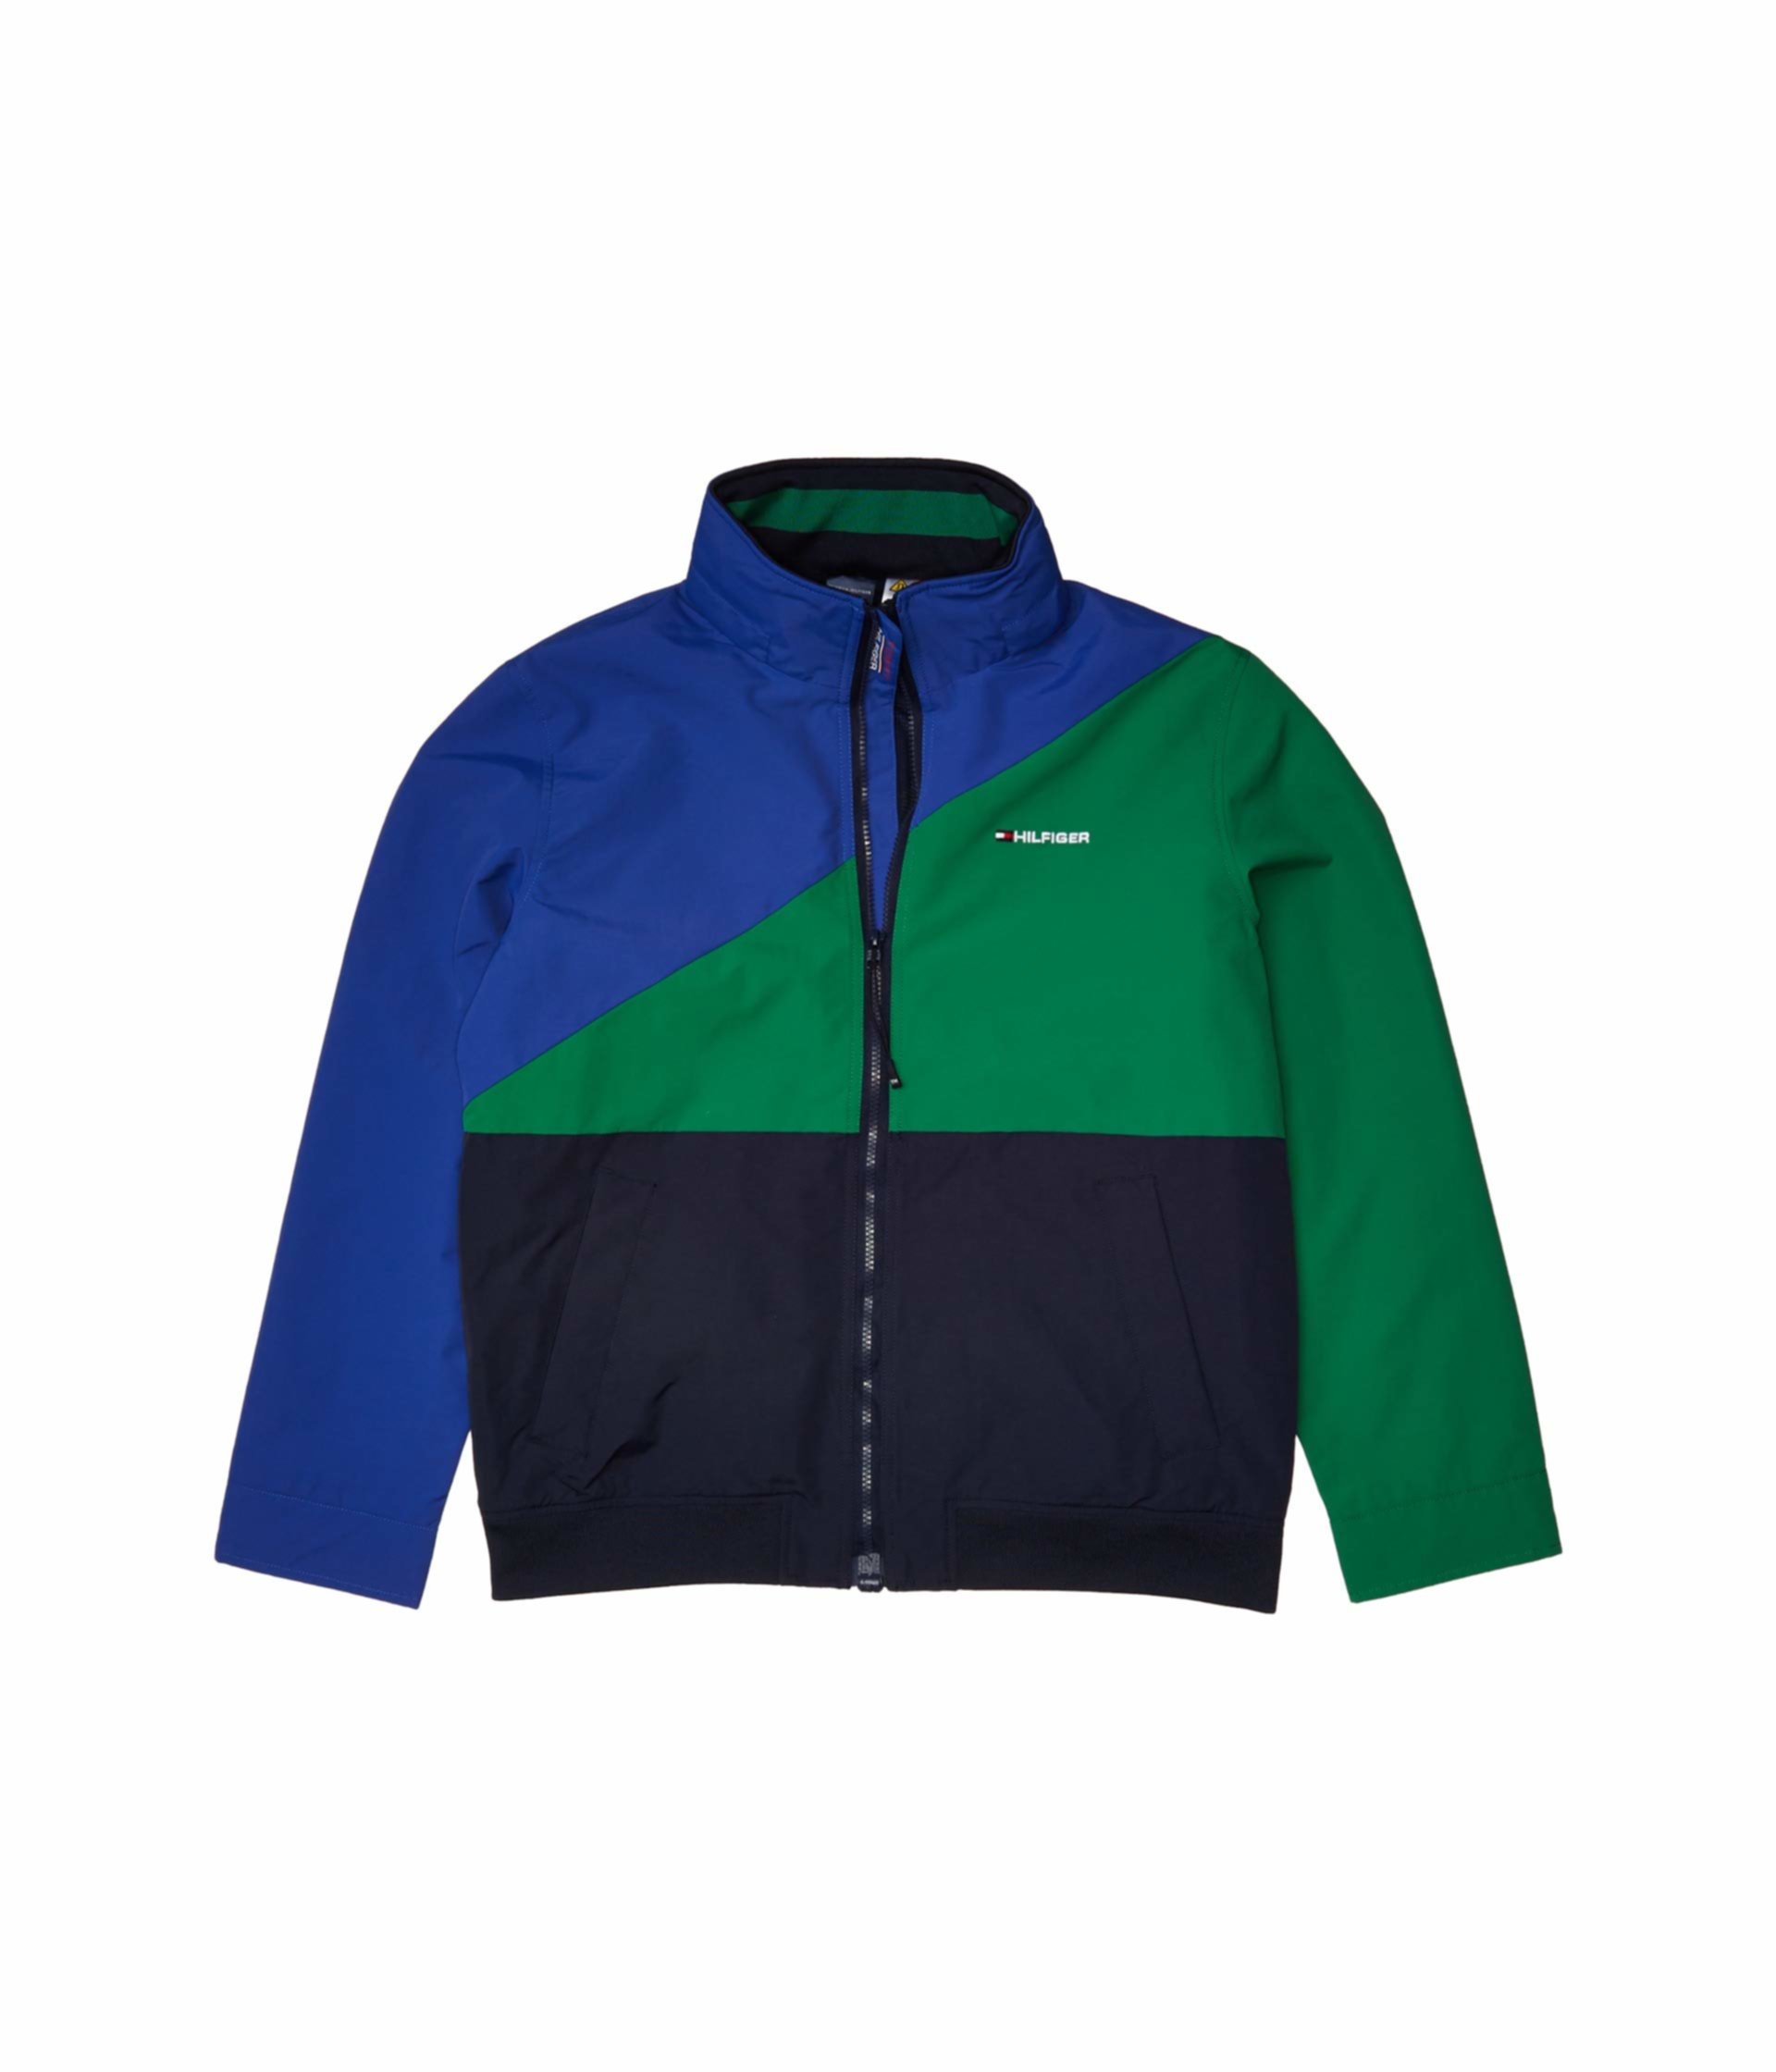 Яхтенная куртка с цветными блоками Tommy Hilfiger Adaptive